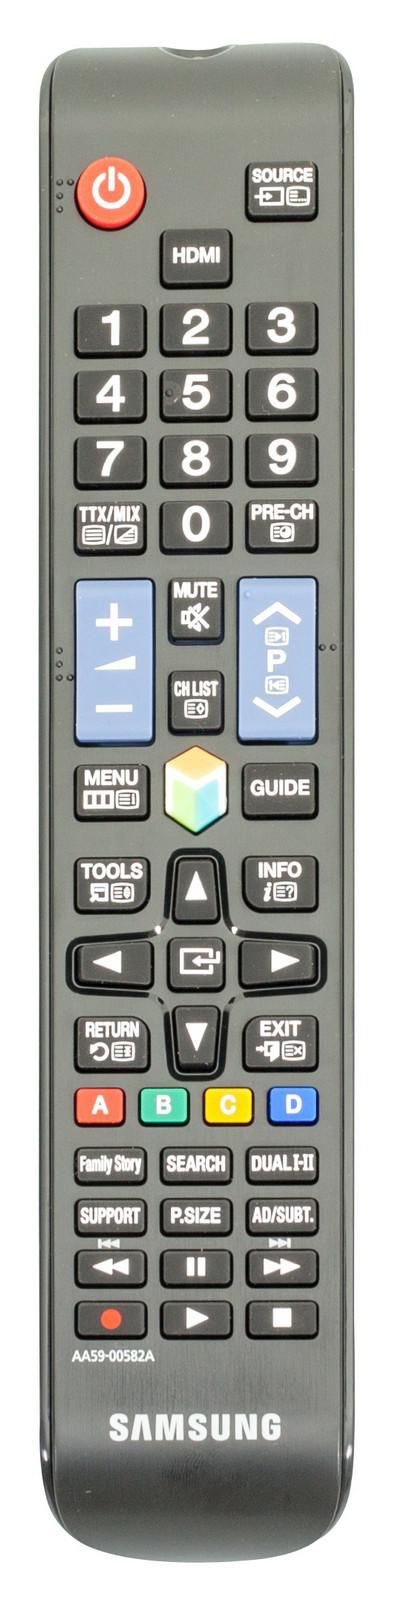 Samsung Remote Control TM1250 - W124745016